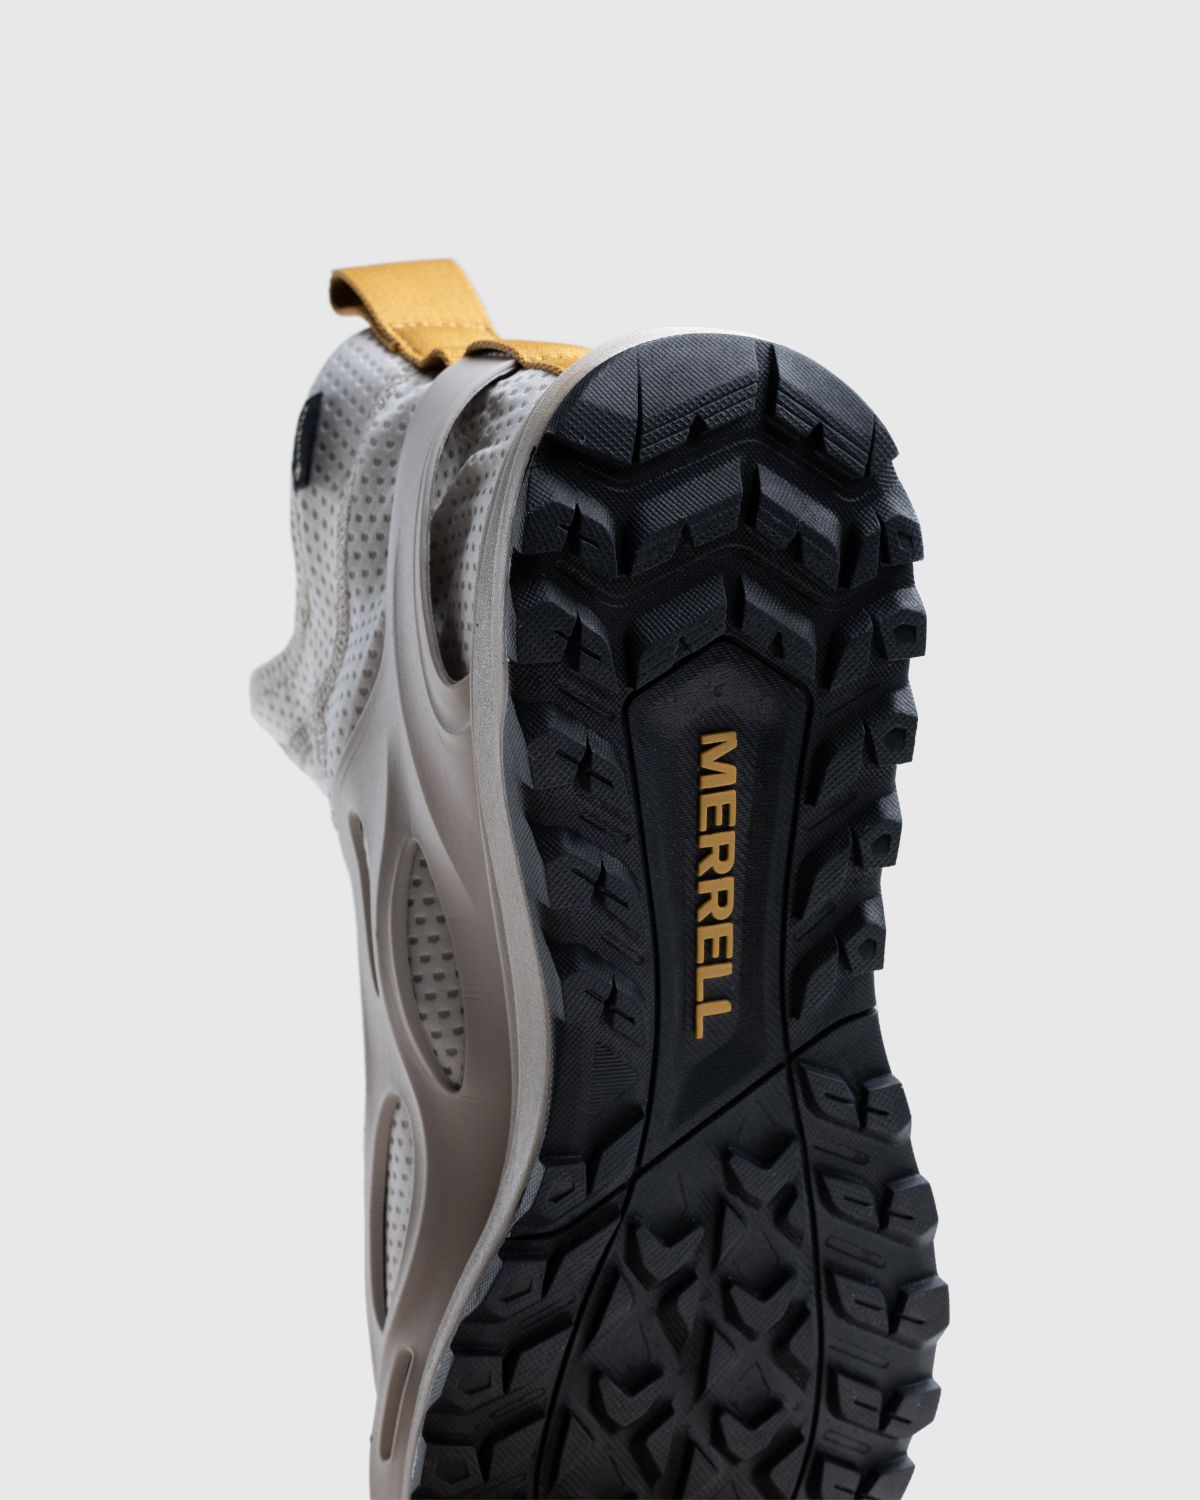 Merrell – Hydro Runner Mid GORE-TEX Moonbeam - Sneakers - Yellow - Image 6